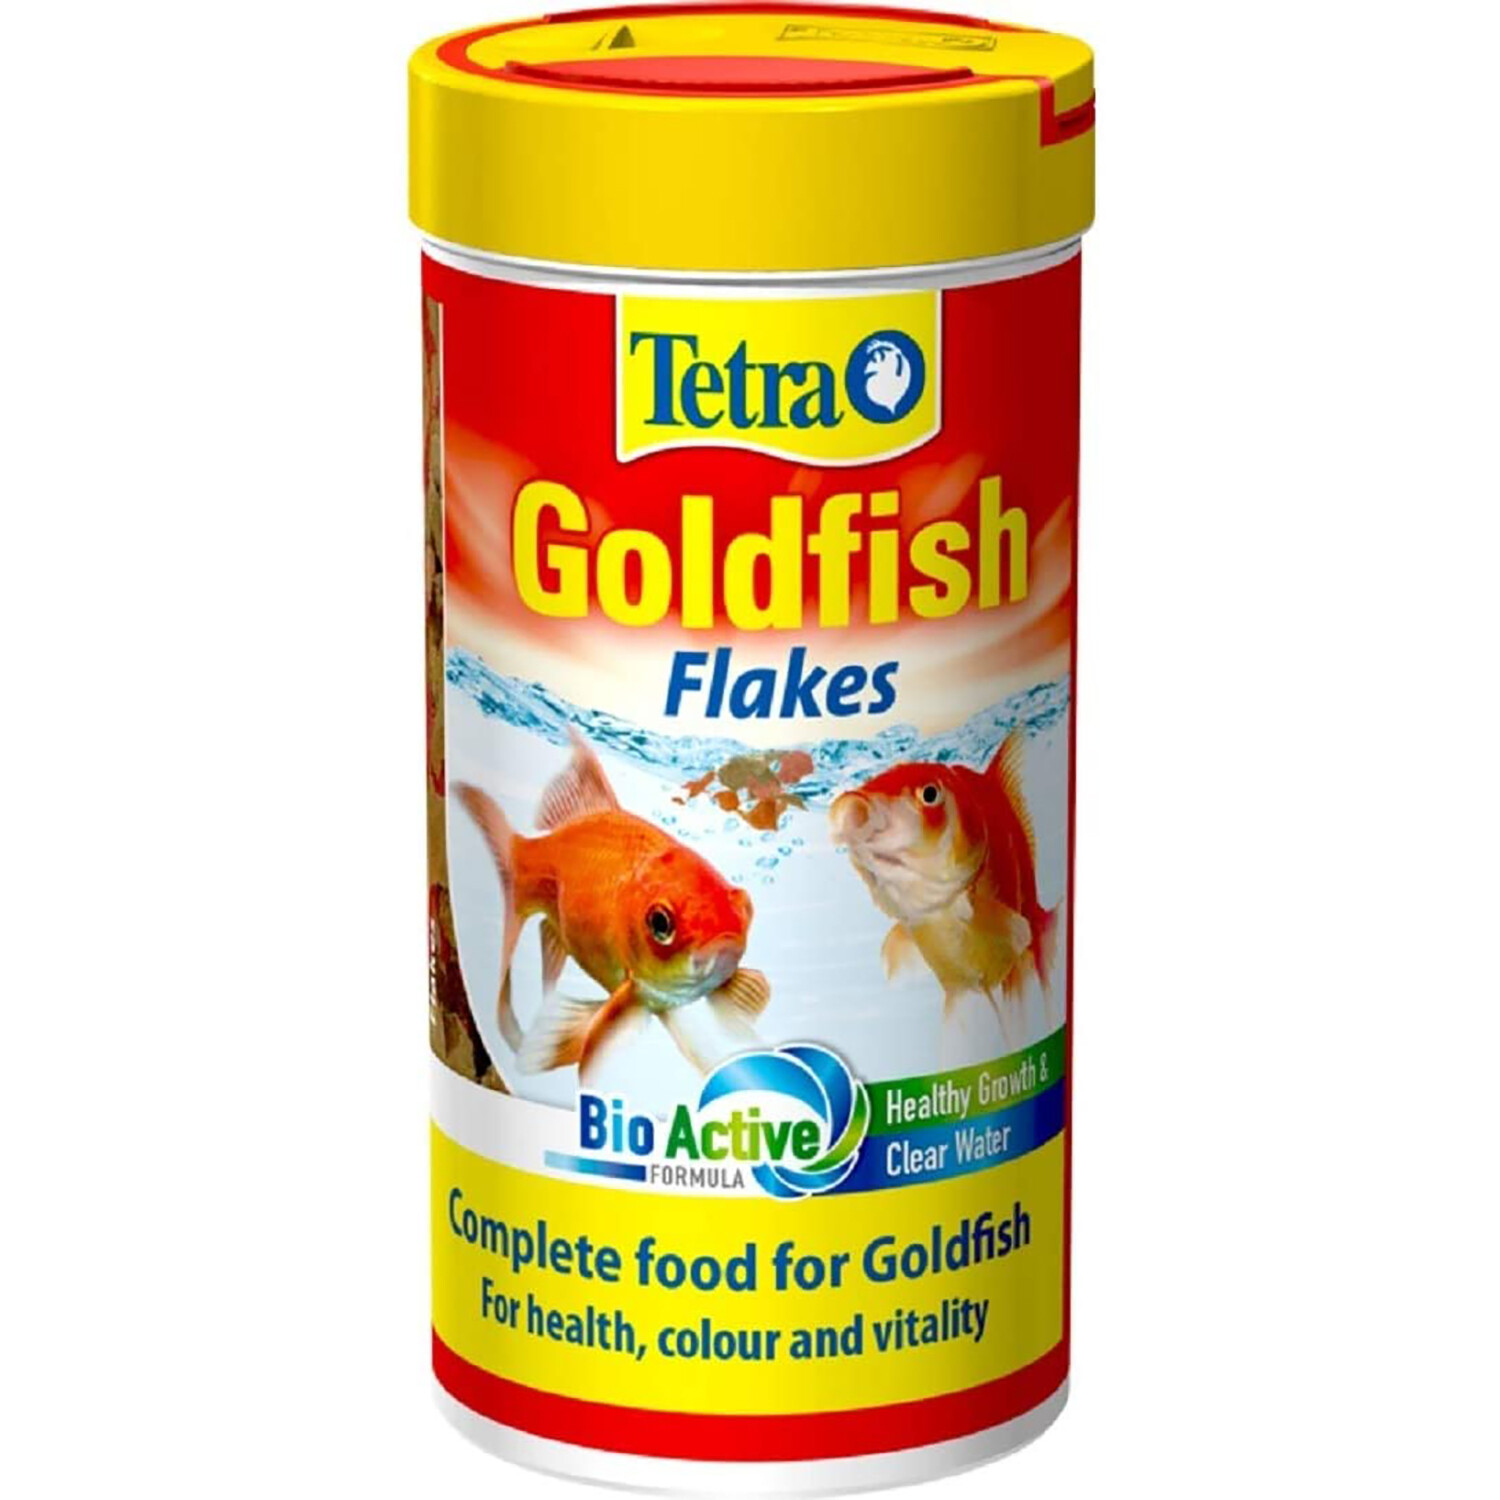 Tetra Goldfish Flakes 52g Image